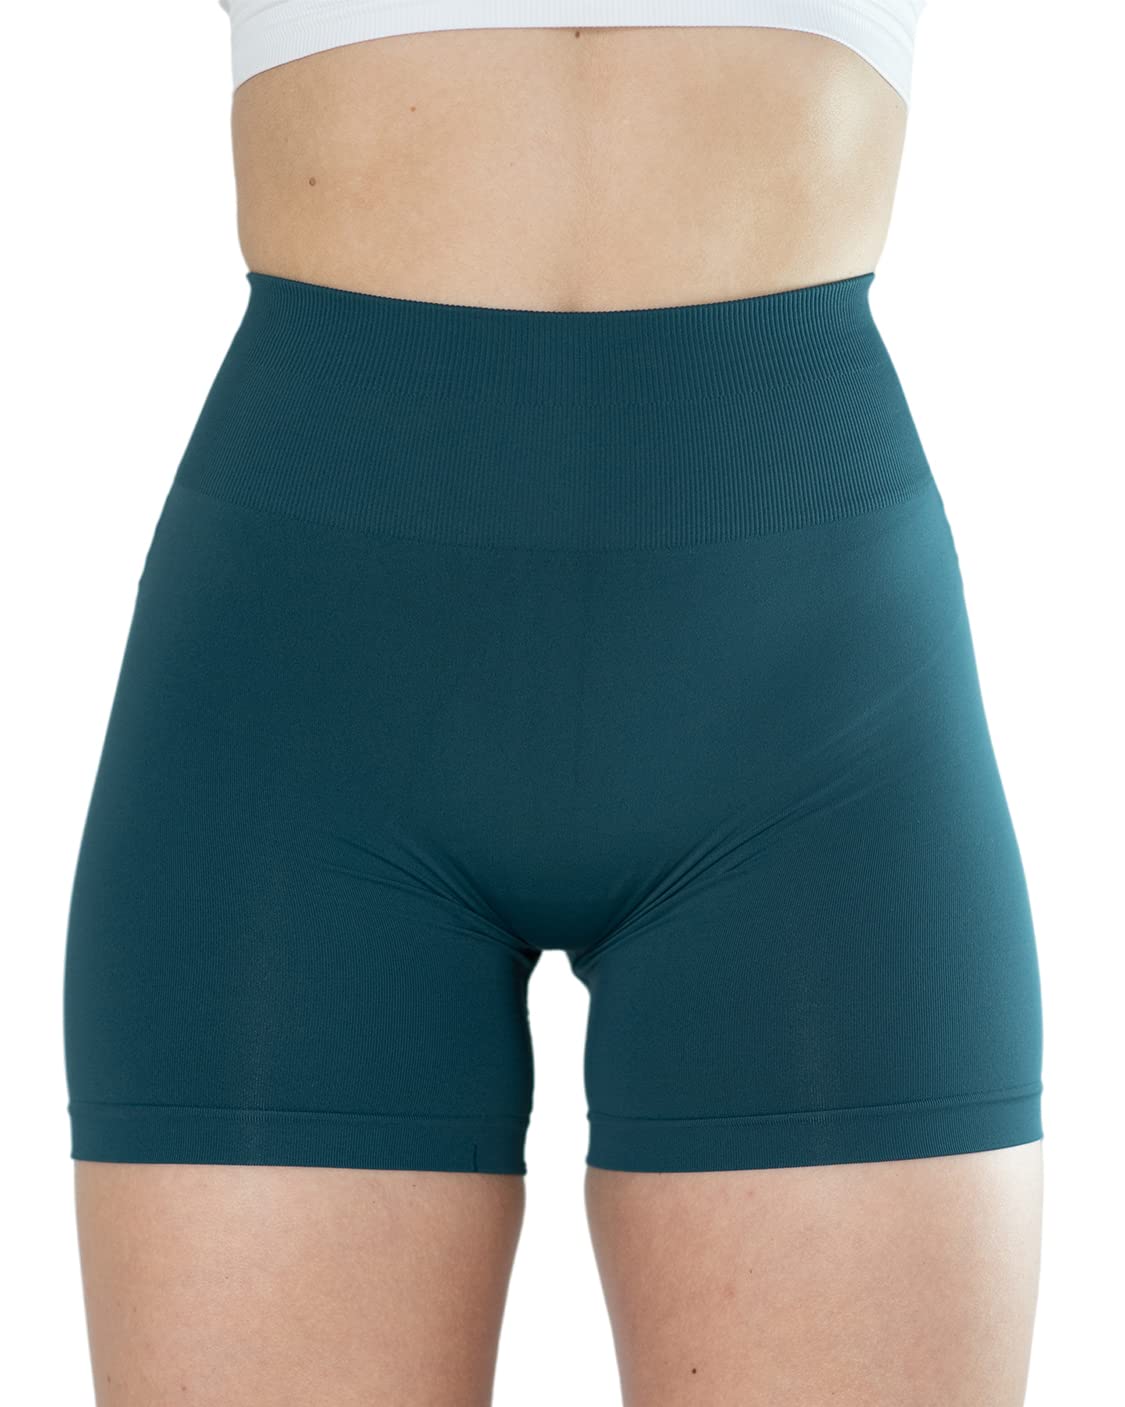  AUROLA Dream Collection Workout Shorts For Women Scrunch  Seamless Soft High Waist Gym Shorts